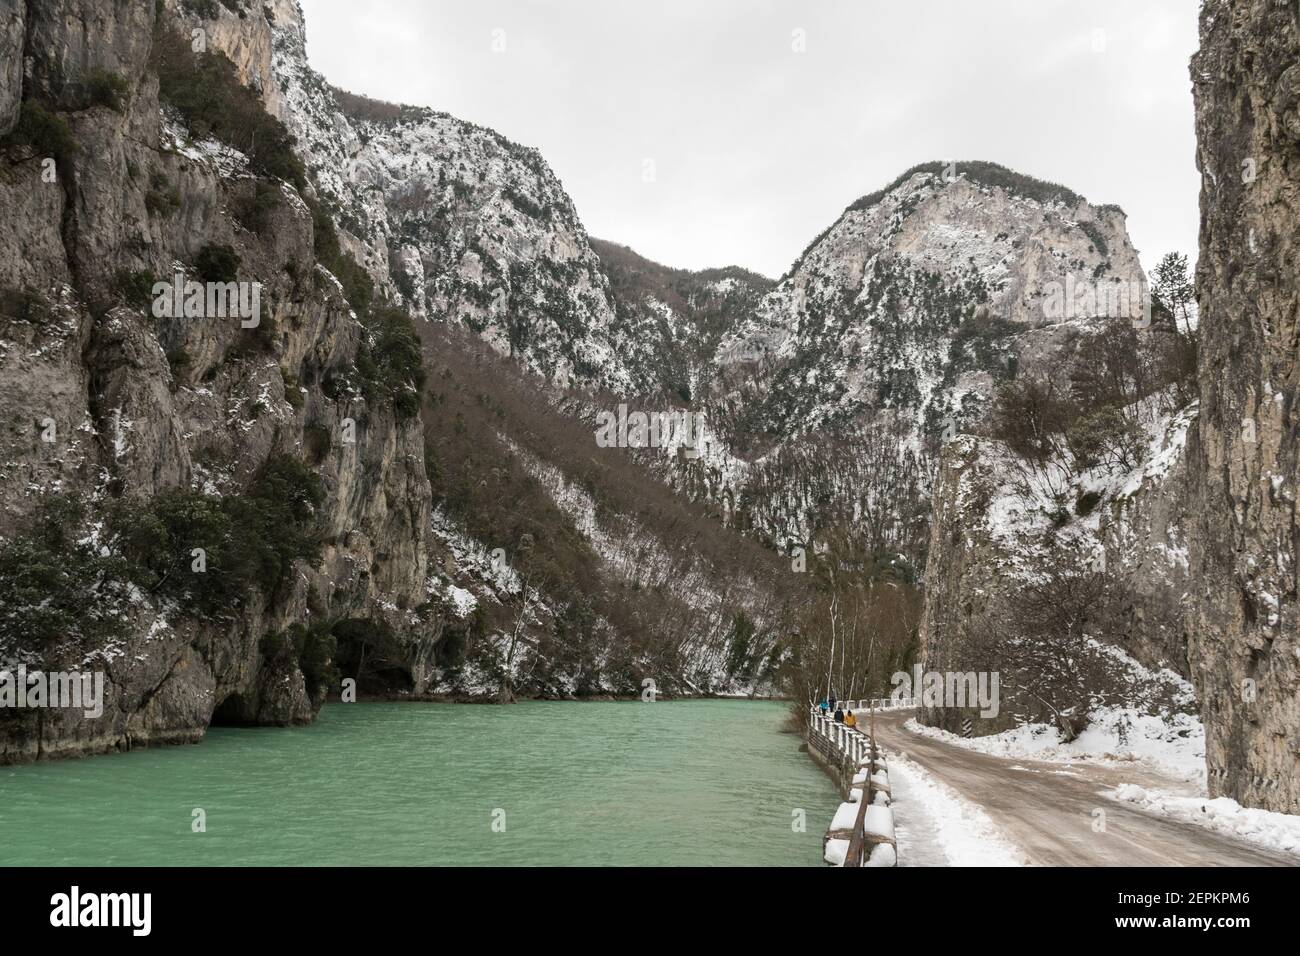 Gola del Furlo, une étroite gorge formée par la rivière Candigliano dans la province de Pesaro-Urbino pendant l'hiver (Marche, Italie) Banque D'Images